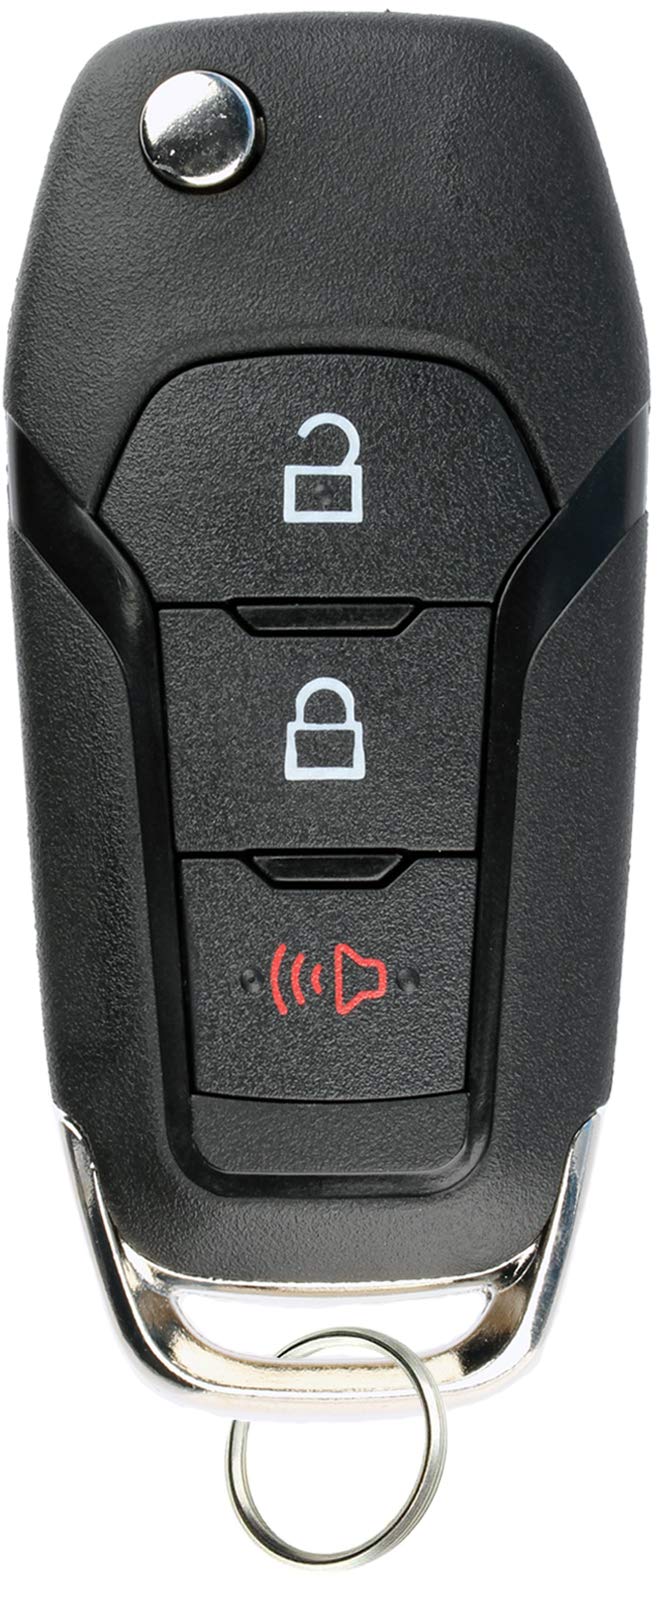  [AUSTRALIA] - KeylessOption Keyless Entry Car Remote Uncut Ignition Flip Key Fob for Ford F150 F250 N5F-A08TAA 1x